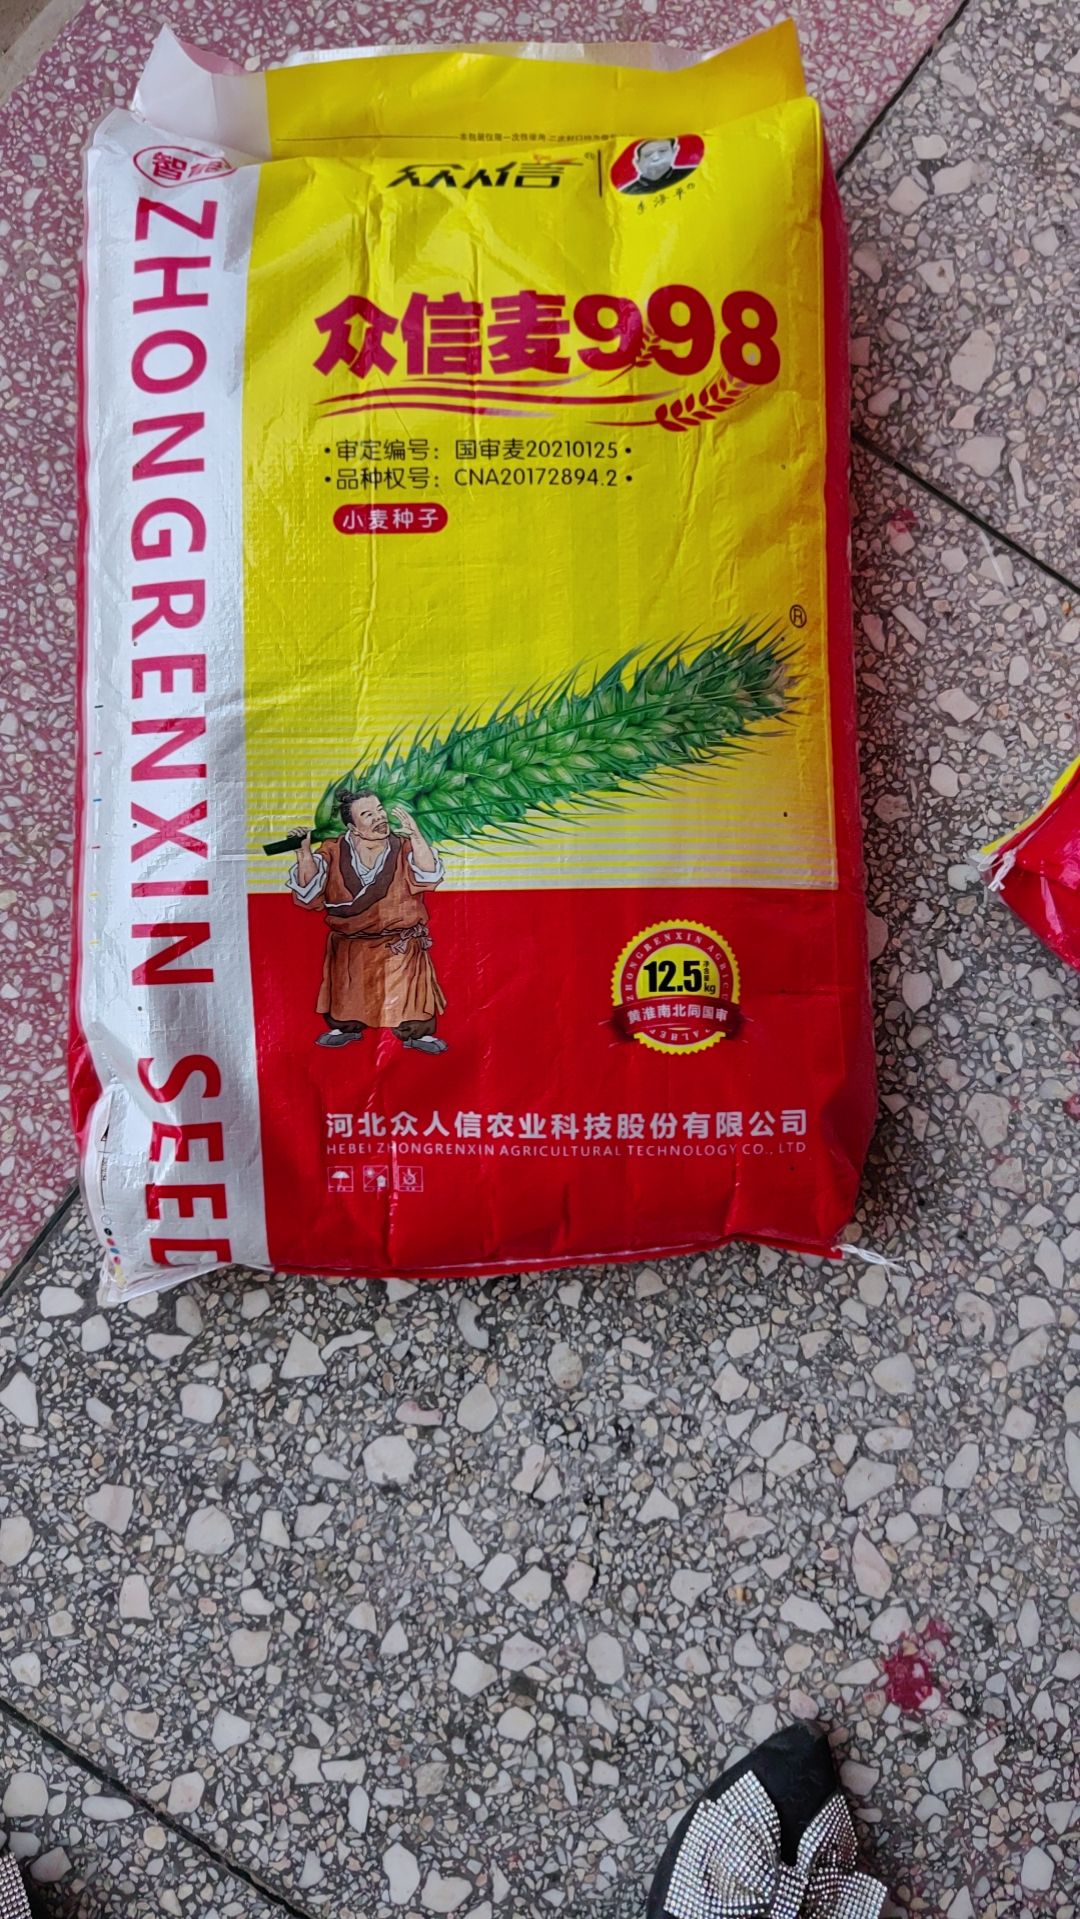 叶县众信麦998，优良品种，抗倒伏抗病害，抗寒抗旱